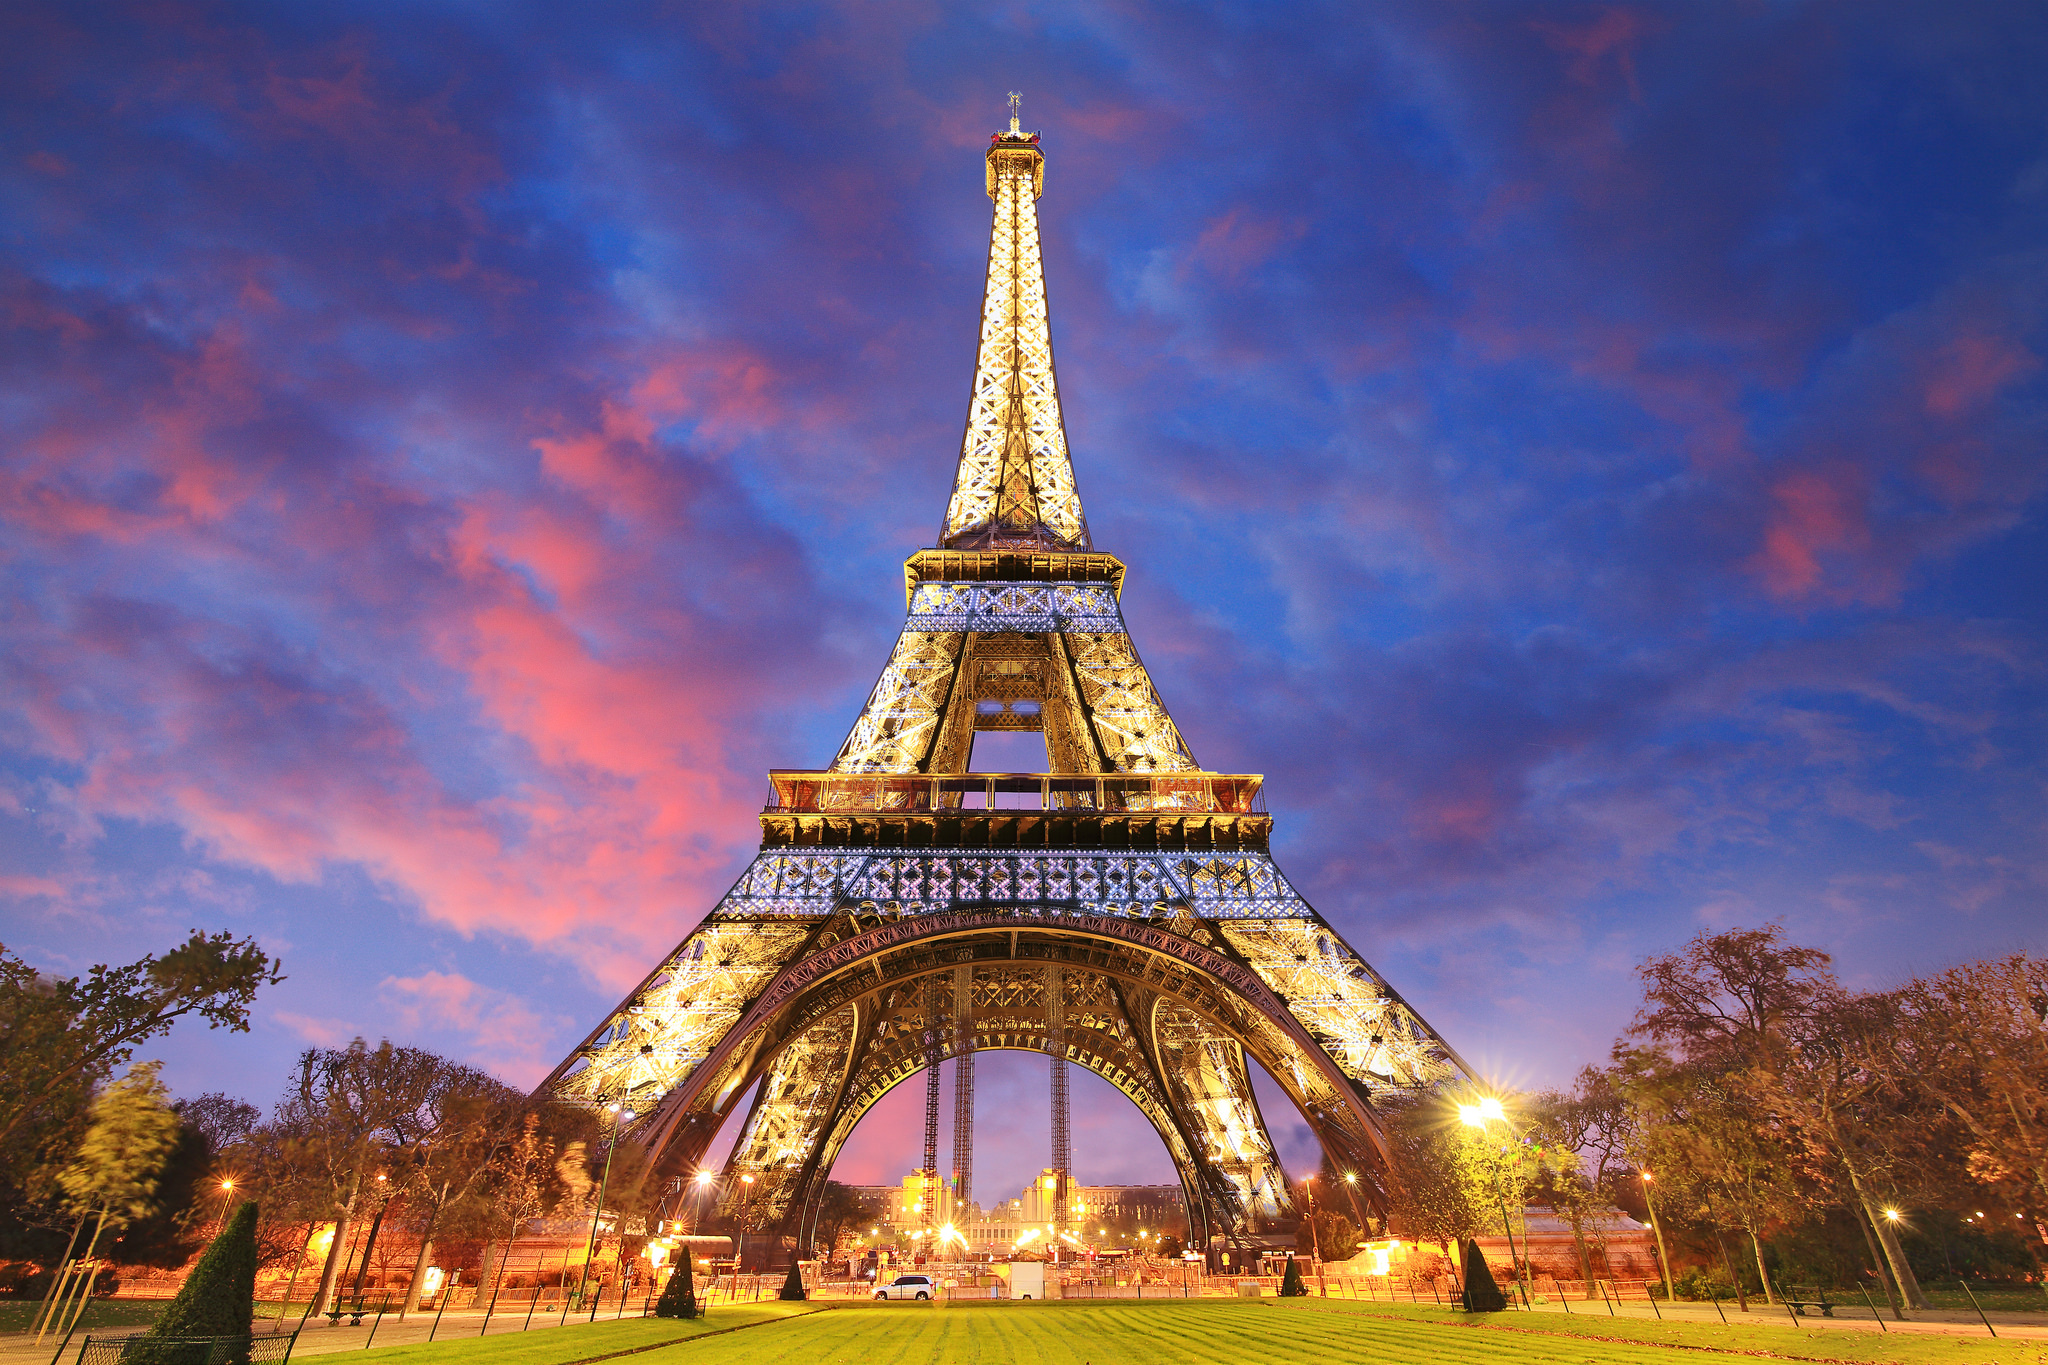 Tổng Hợp 50+ Hình Ảnh Tháp Eiffel Đẹp, Lộng Lấy, Hùng Vĩ Nhất 56